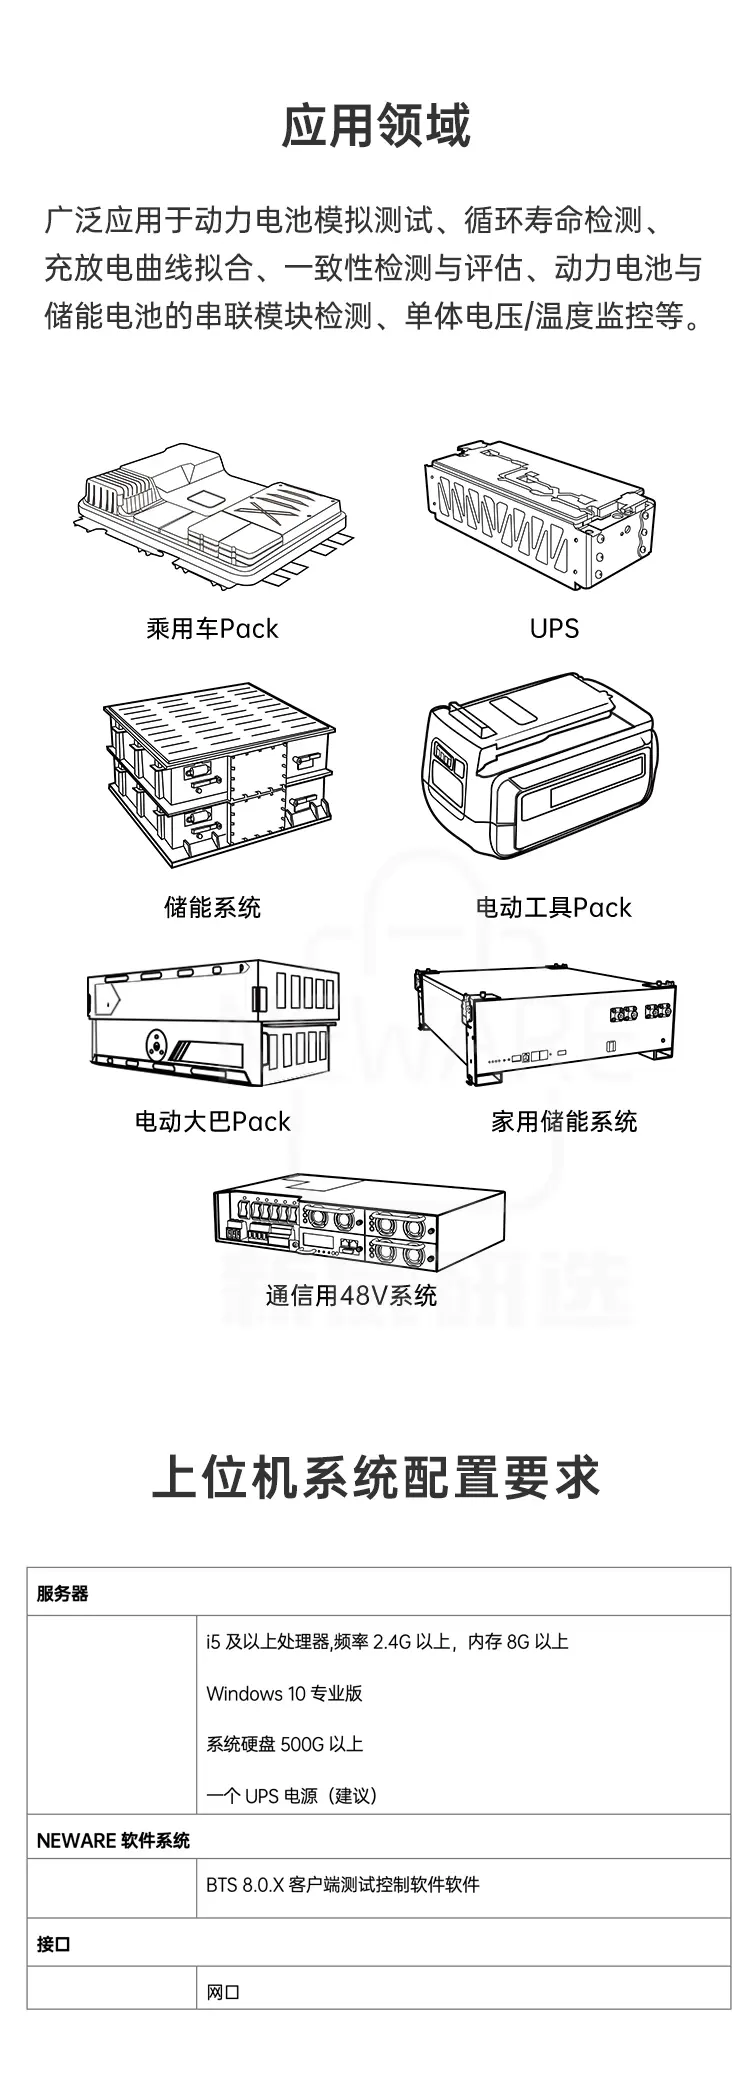 动力电池检测系统CE-6004n-300V300A-IG商品介绍9